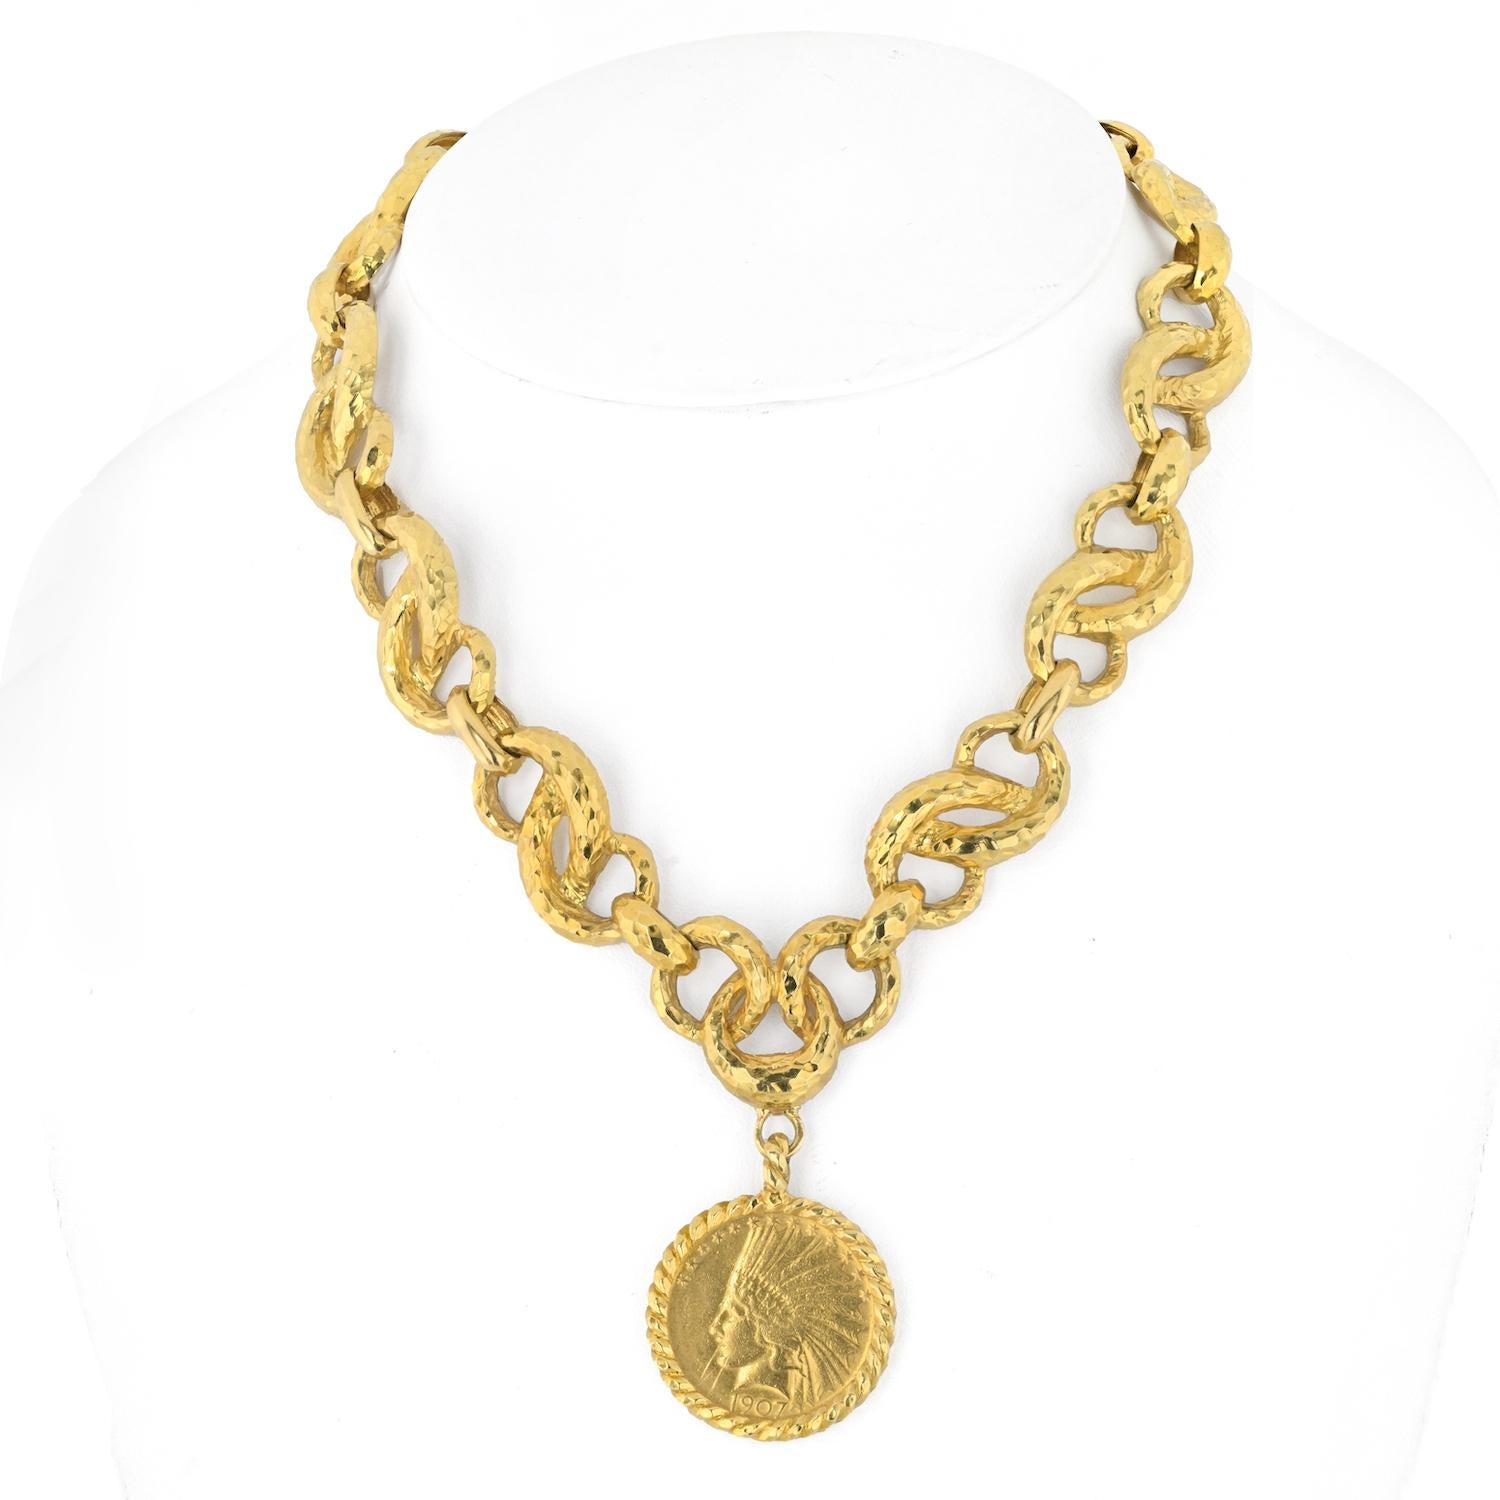 Erhöhen Sie Ihren Stil mit dieser exquisiten David Webb 18K Gelbgold Hammered Chain 